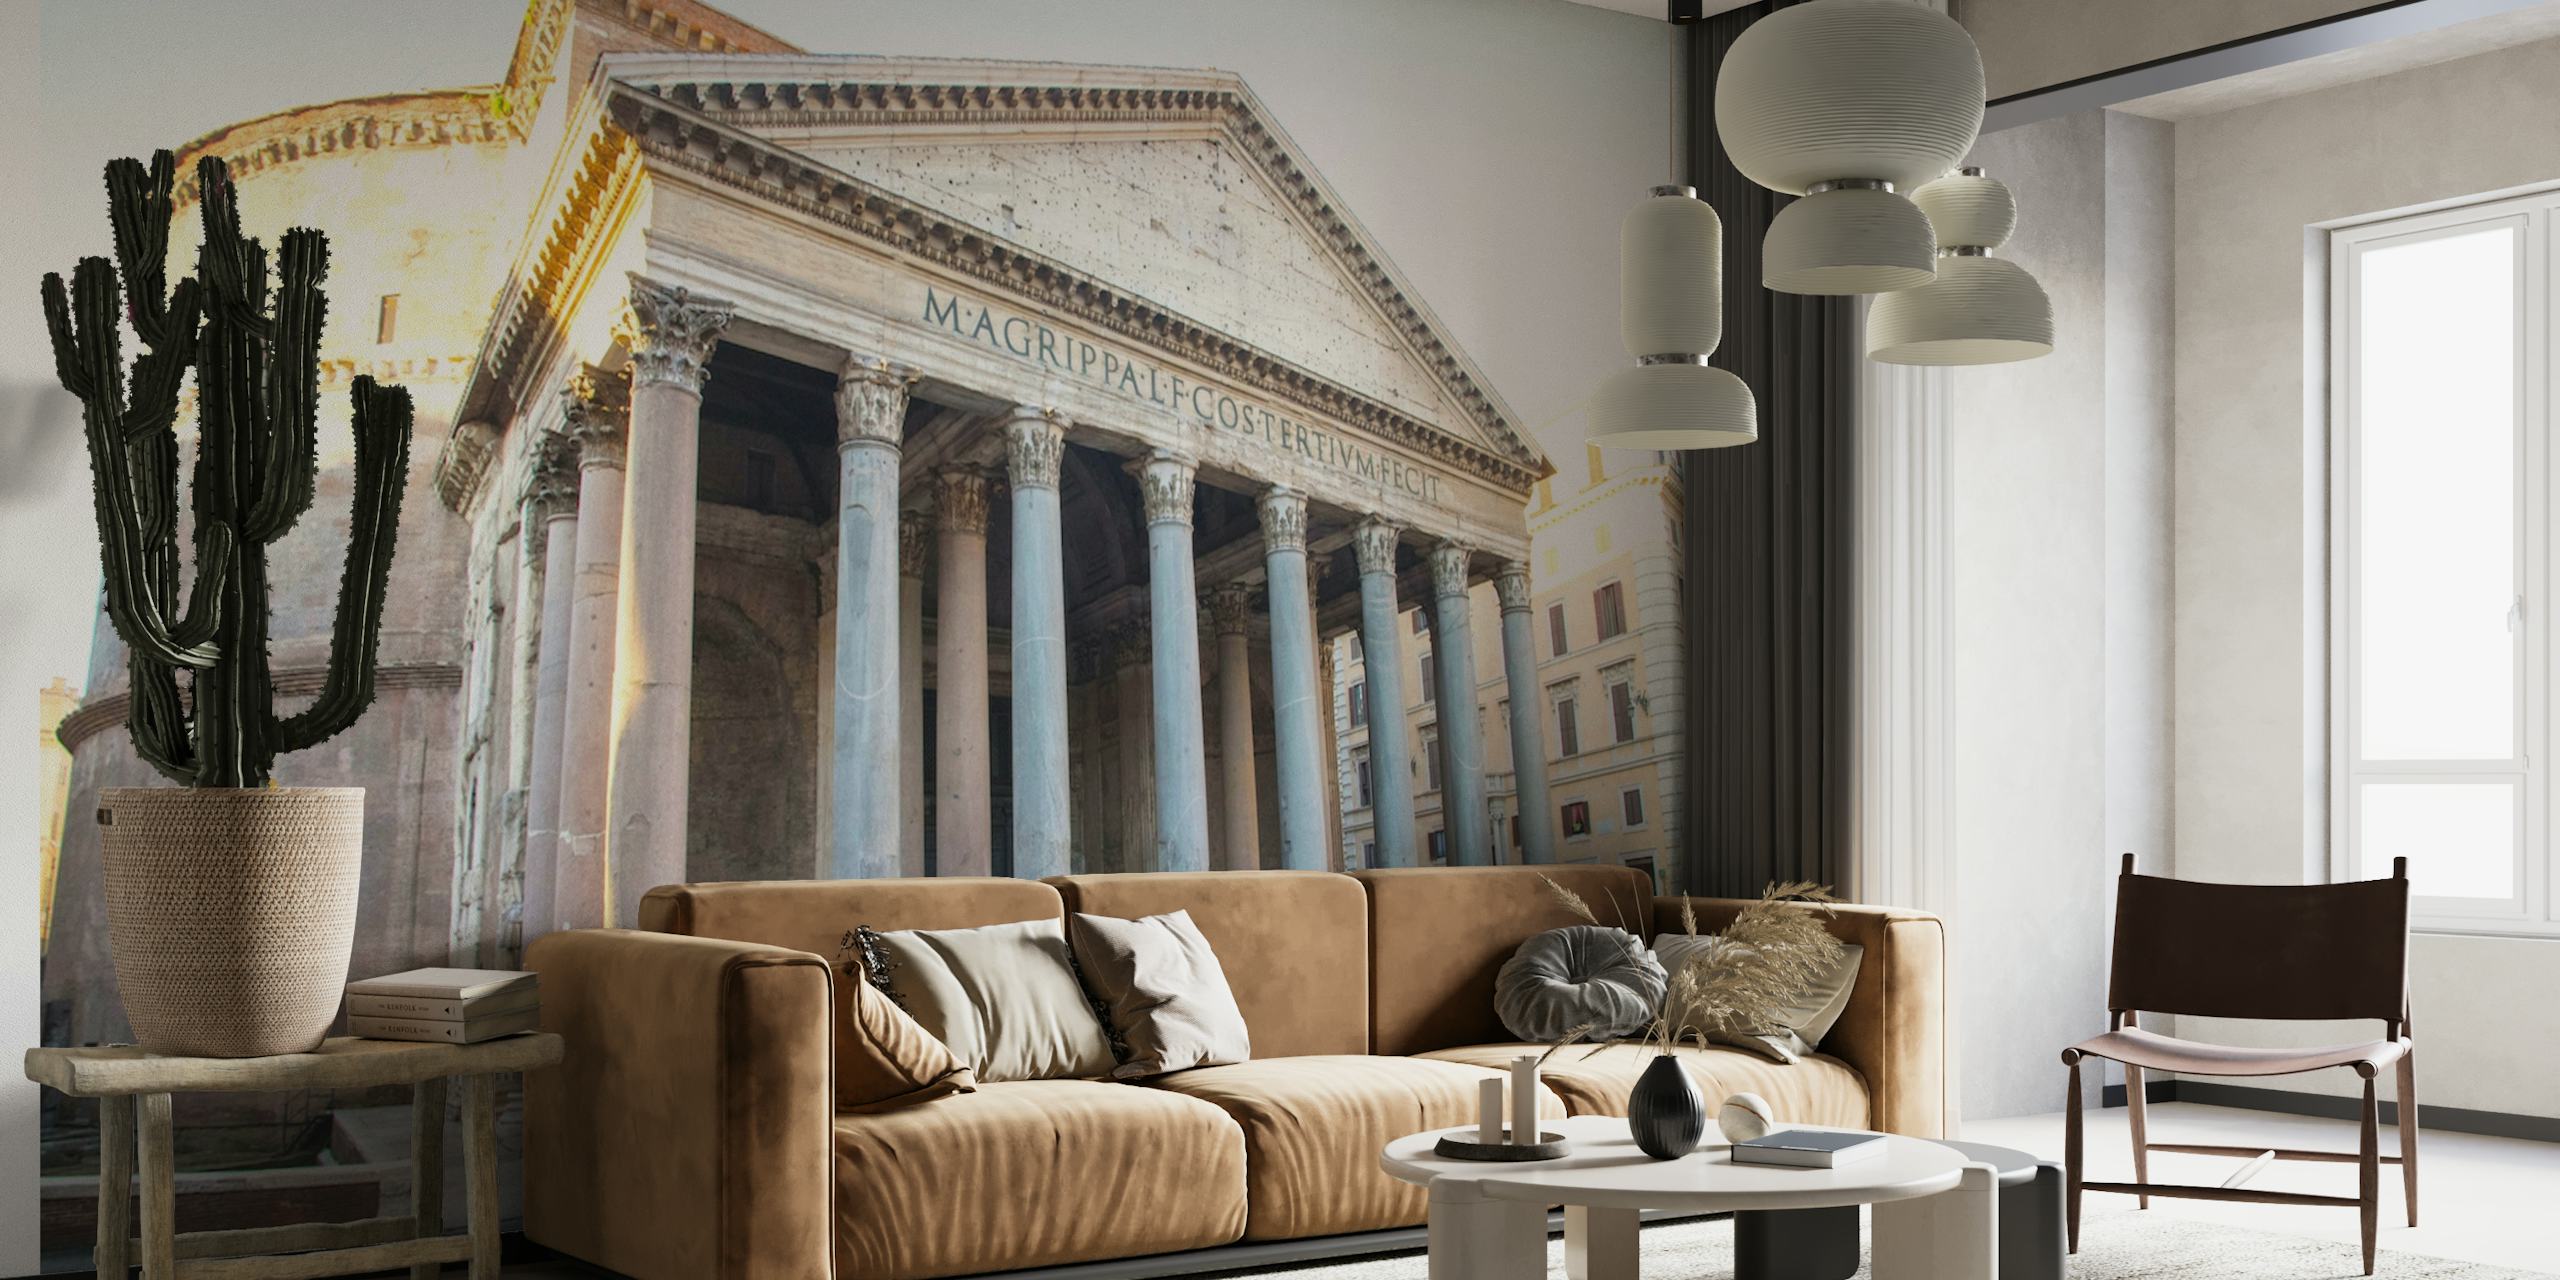 Glorious Pantheon Roomassa seinämaalaus, jossa näkyy muinaisen temppelin etuosa ja sen klassiset pylväät.